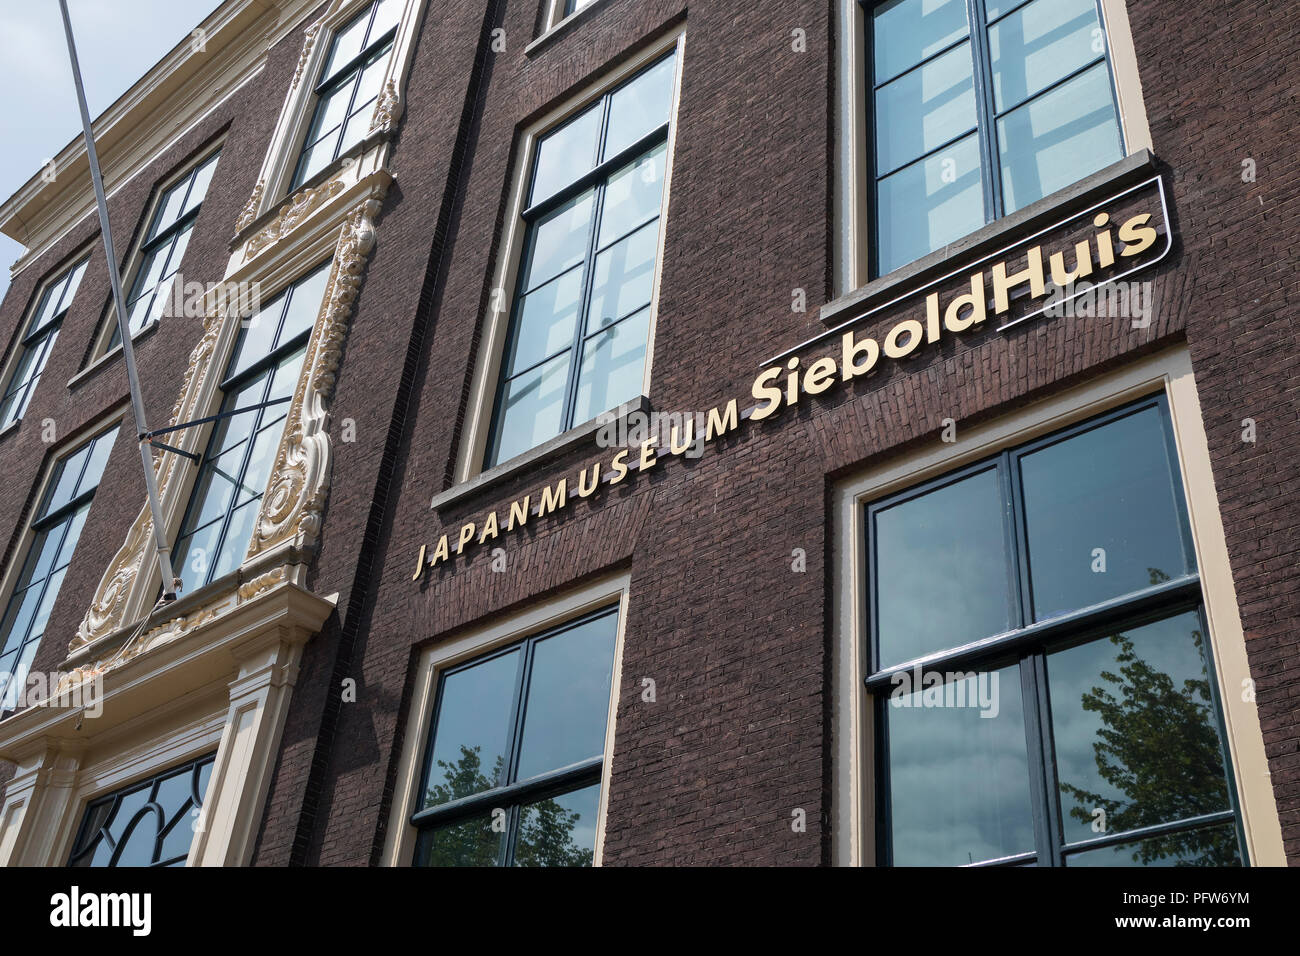 Leiden, Niederlande - 17. Juli 2018: die Fassade der Sieboldhuis, Japan Museum im Zentrum von Leiden Stockfoto